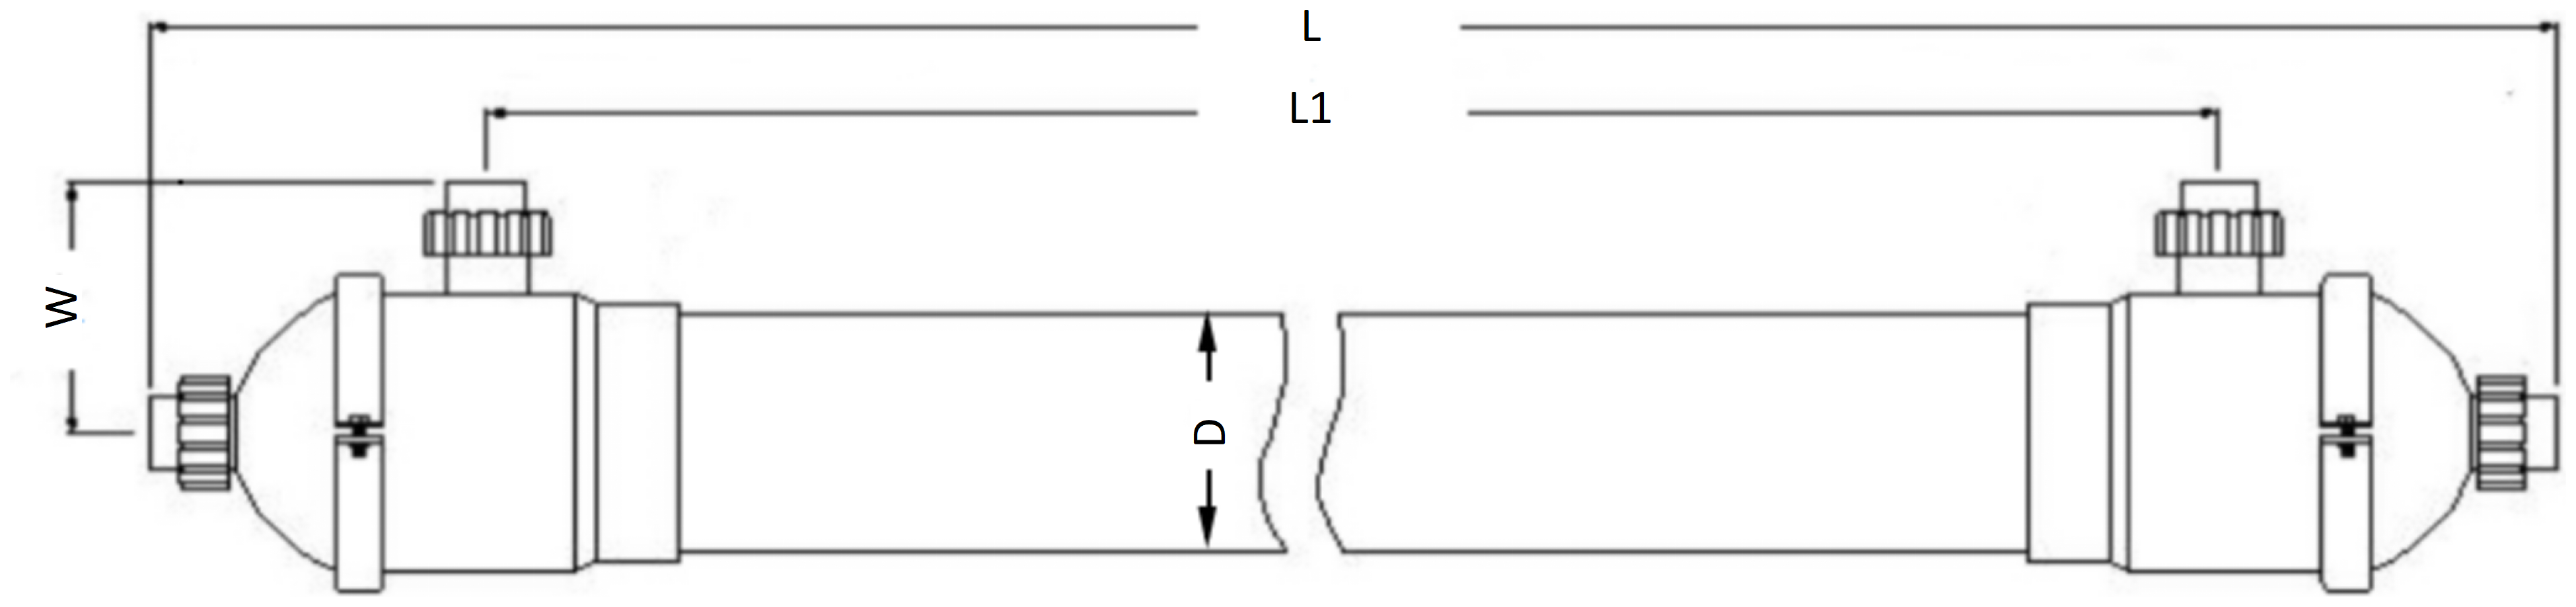 Dimensions of Hollow Fiber Membrane Contactor